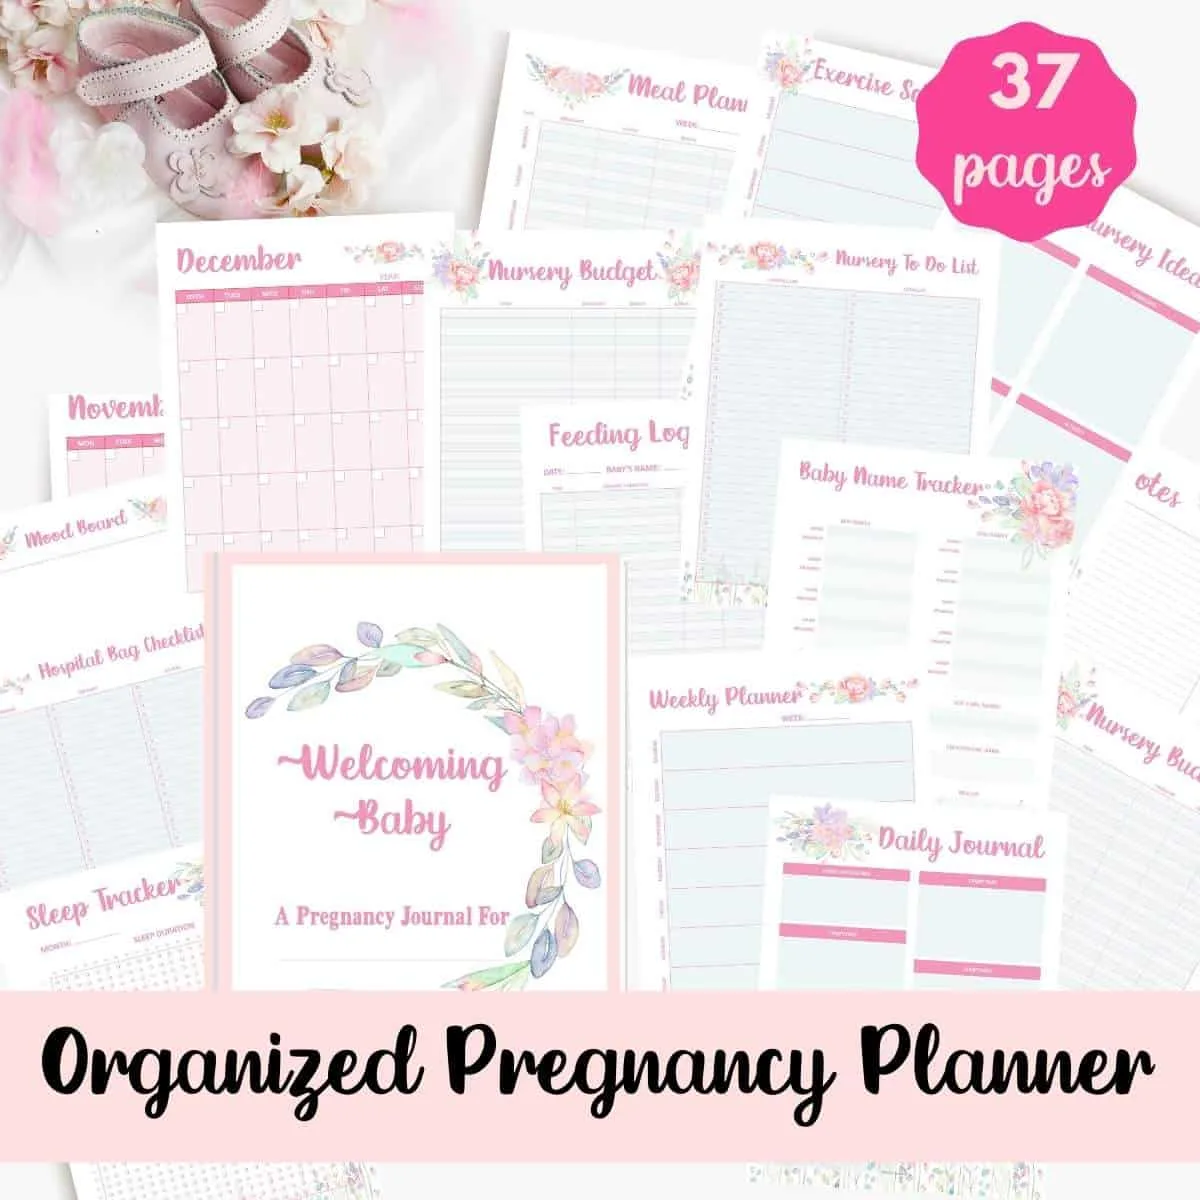 Organized Pregnancy Planner